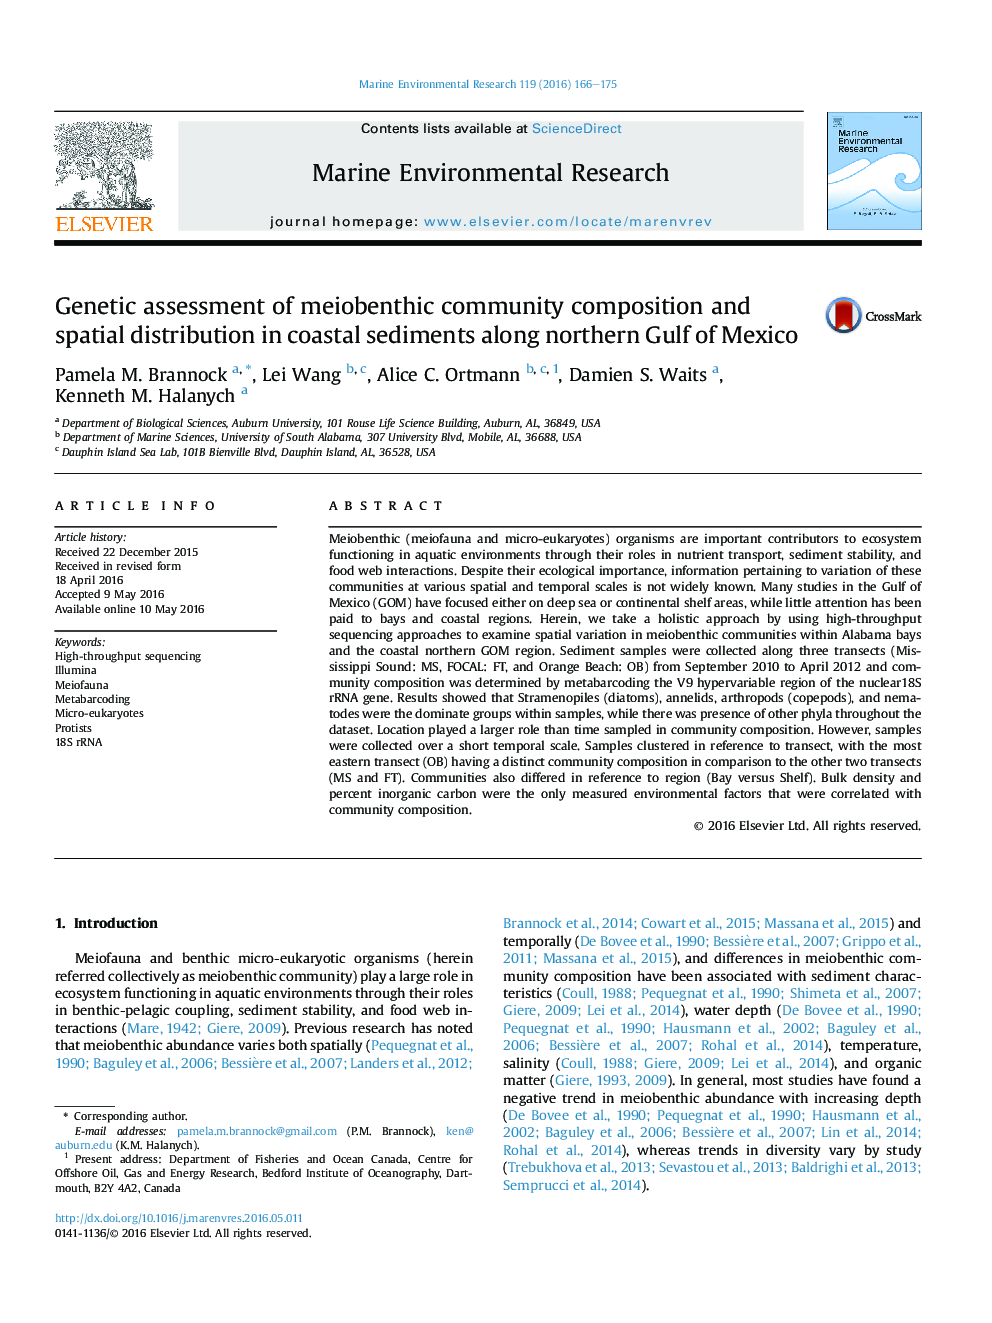 ارزیابی ژنتیکی ترکیب جامعه مینوتیو و توزیع فضایی در رسوبات ساحلی در شمال خلیج مکزیک 